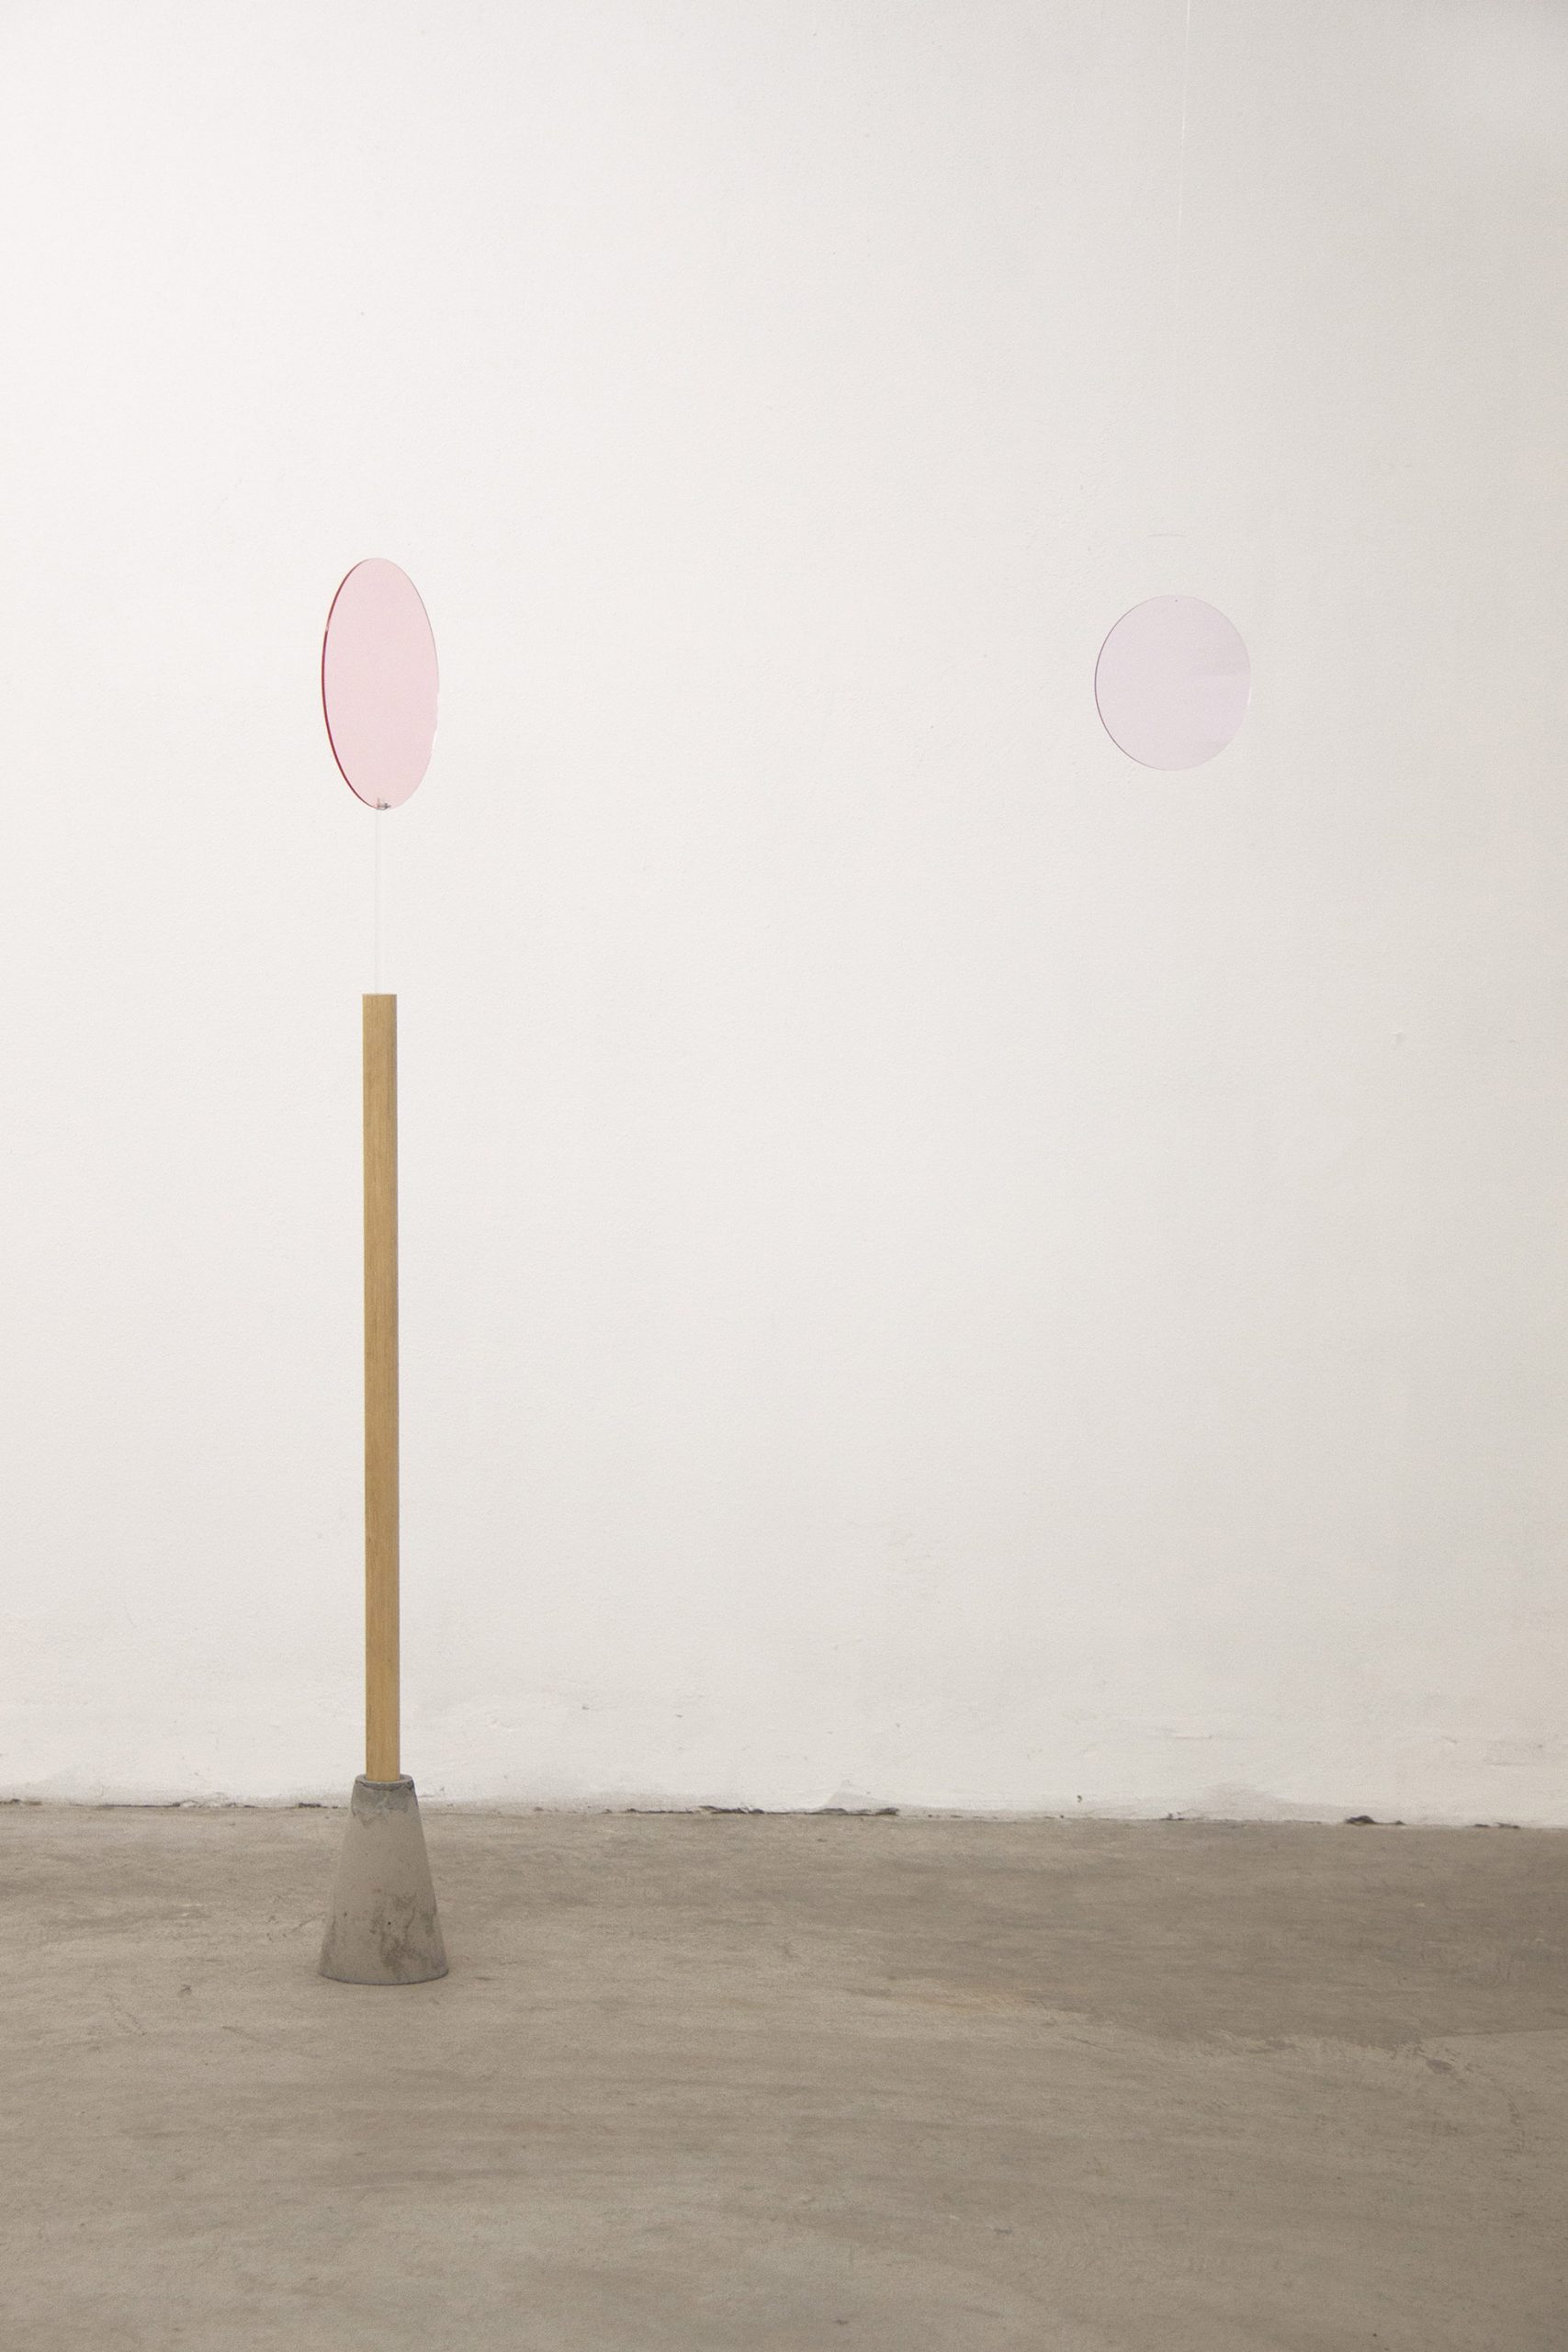 Giulia Fumagalli, “Lasciarsi eclissare rosa - rosa”, 2019, plexiglass, adhesive films, nylon wire, wood, cement, 145 cm x variable dimensions